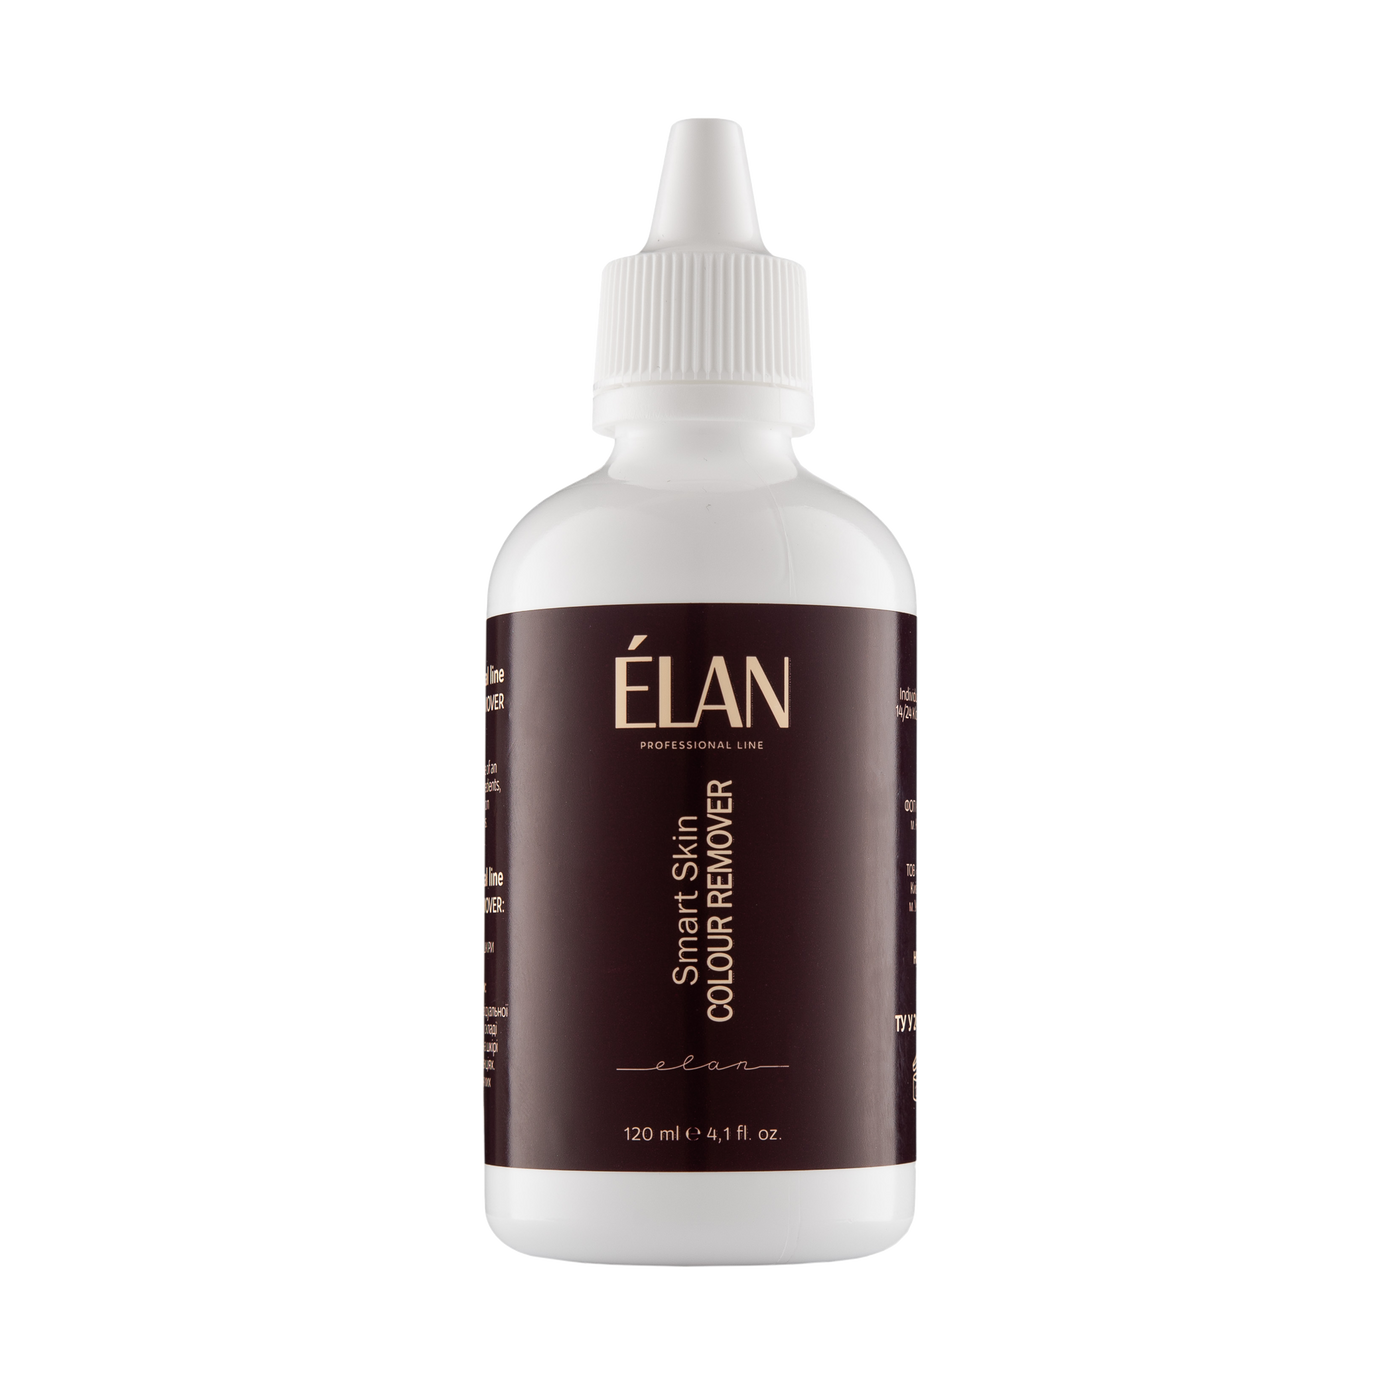 ELAN - Smart Skin Colour Remover